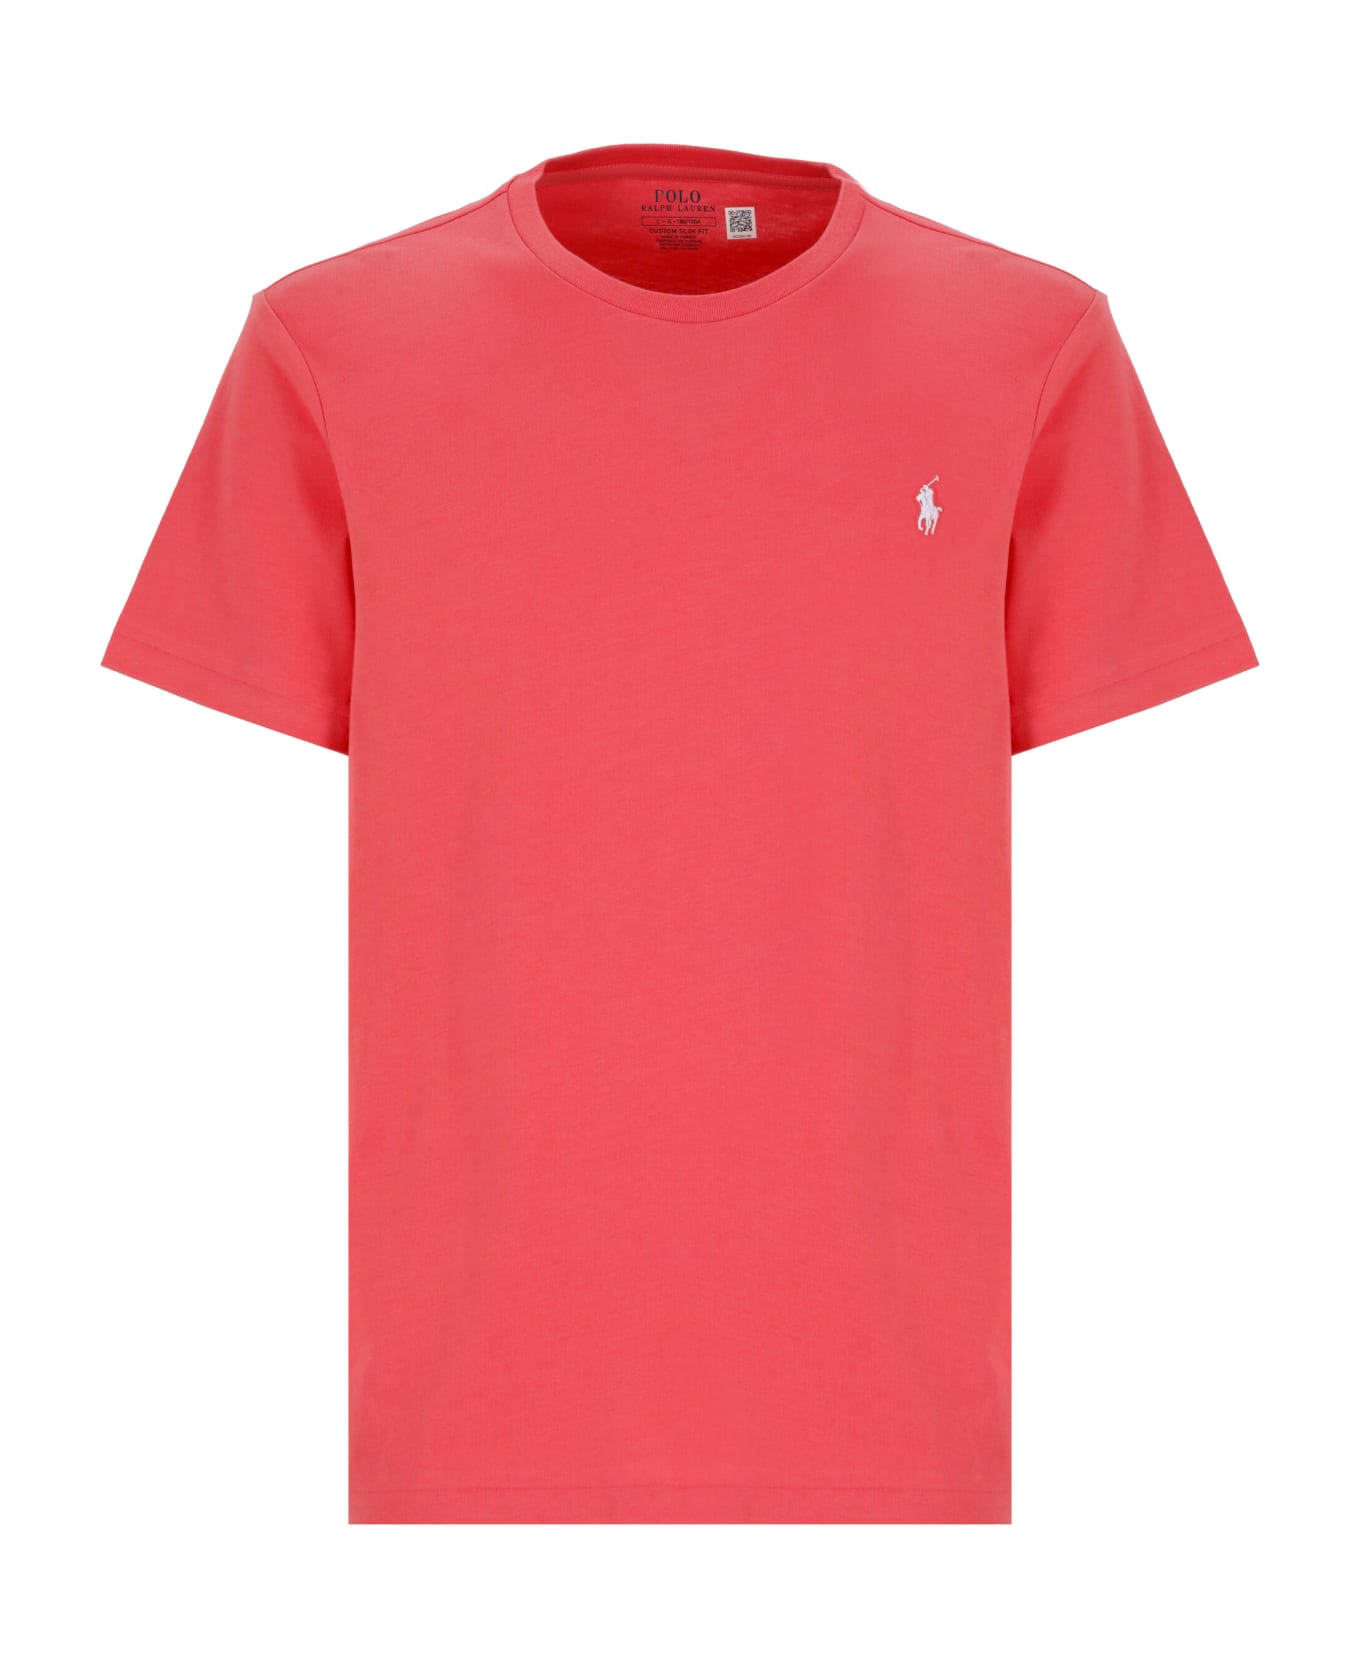 Ralph Lauren Pony T-shirt - Red